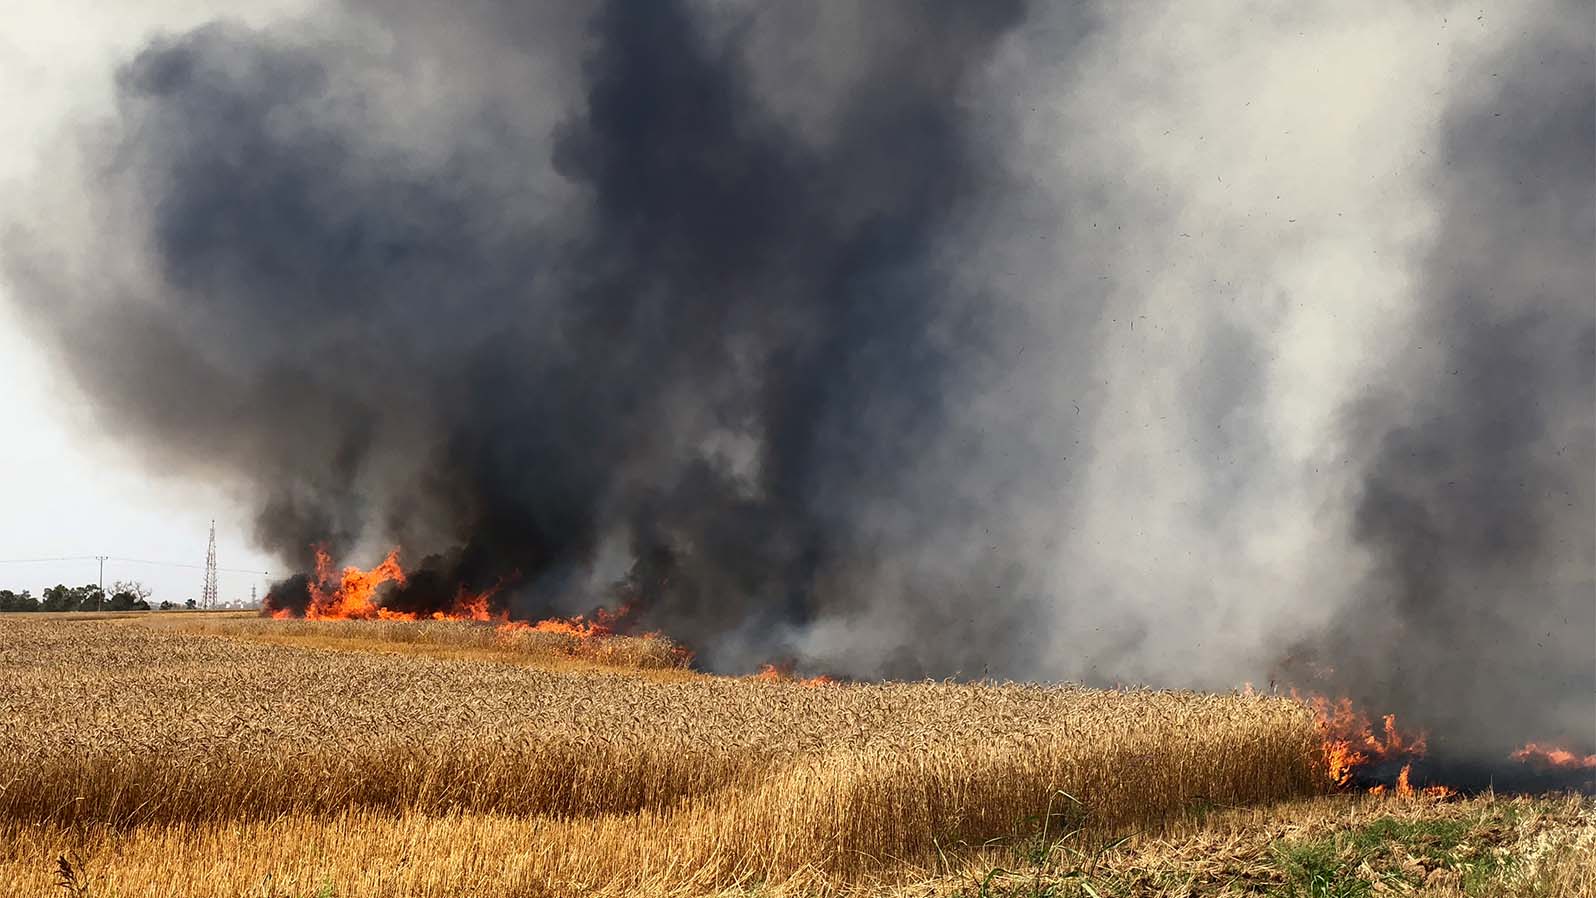 שדות עוטף עזה נשרפים בזמן טרור העפיפונים (צילום: משה פילברג)